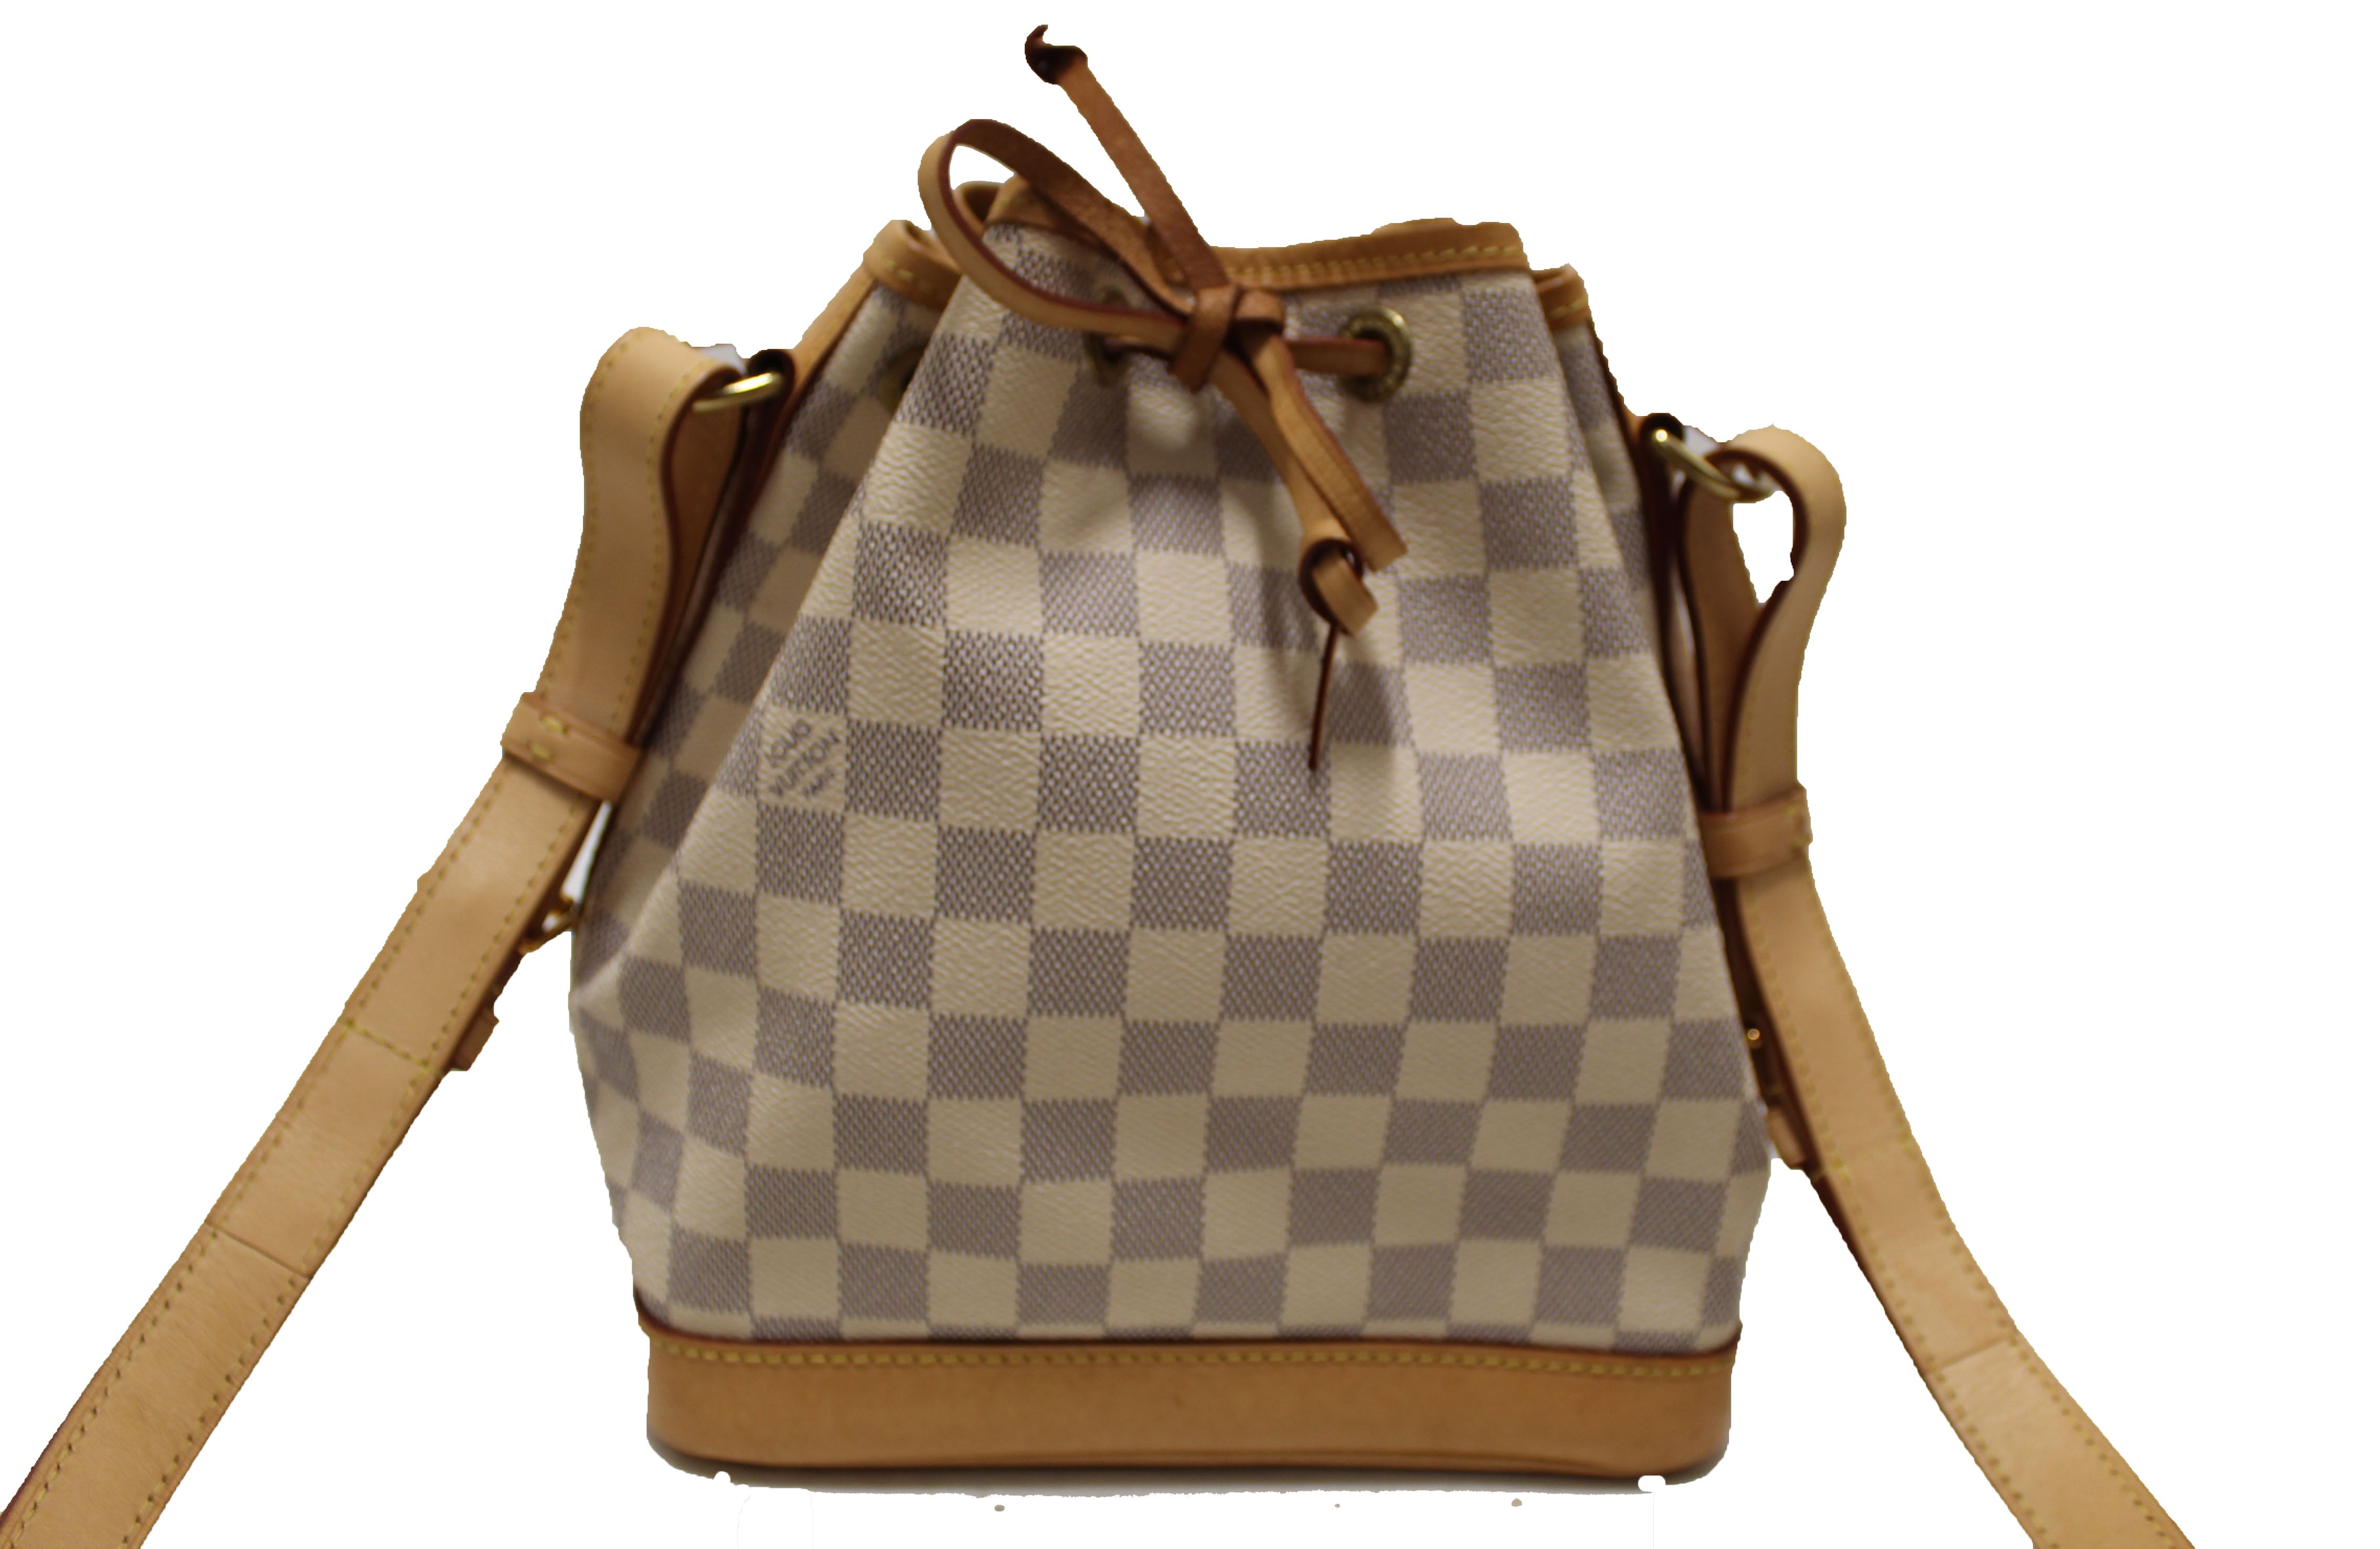 Authentic Louis Vuitton large Noe Damier Azur drawstring Shoulder bag